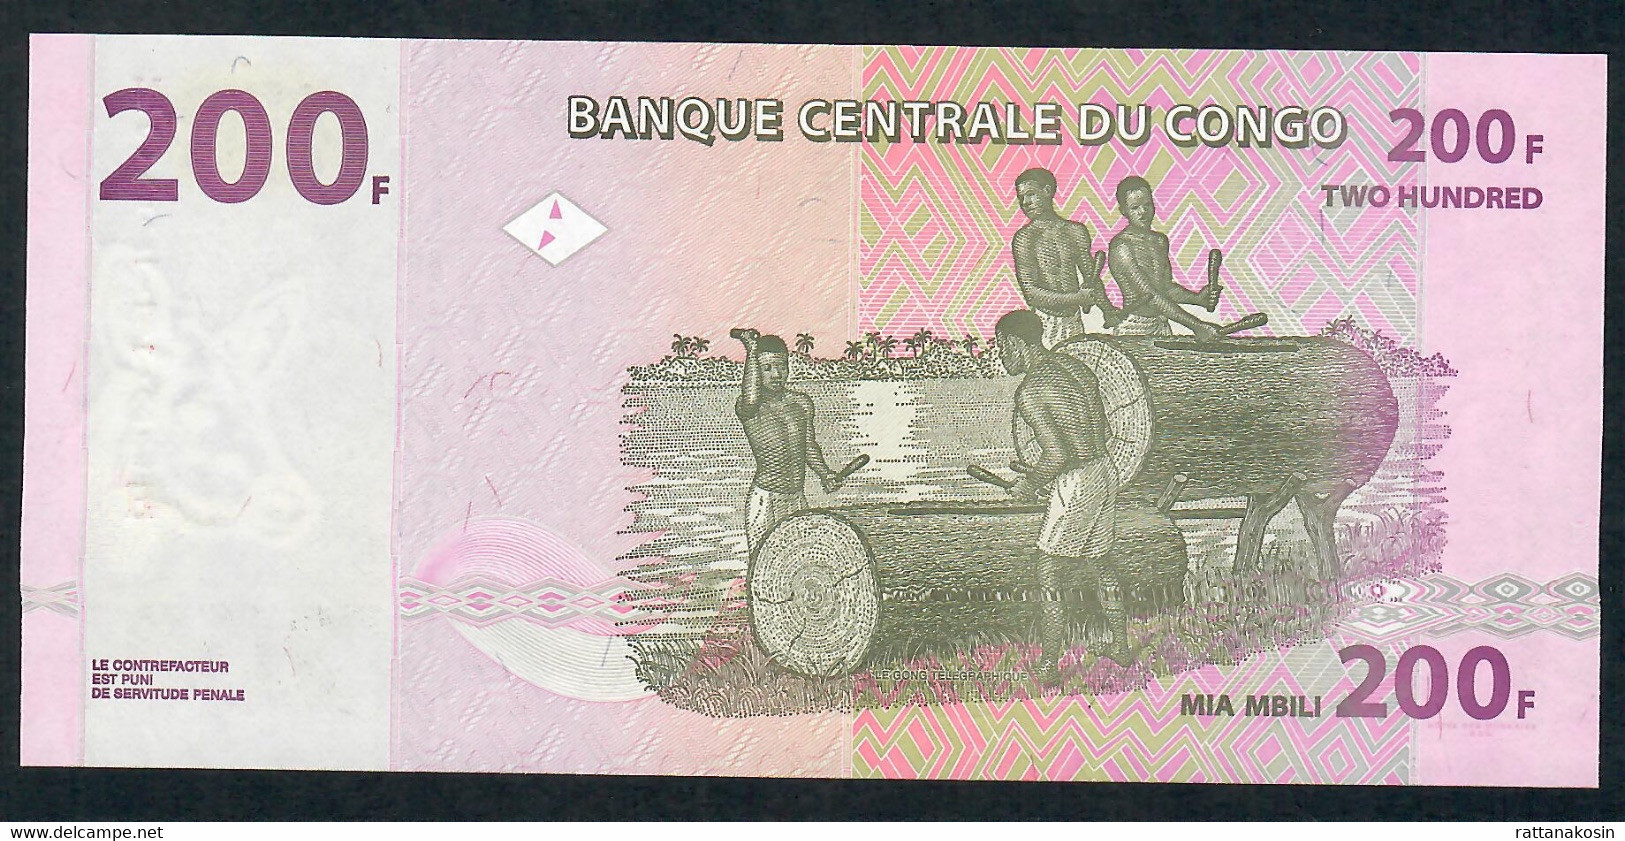 CONGO P99b 200 FRANCS 2007 # NC/H    ( HdM )   UNC. - Democratic Republic Of The Congo & Zaire